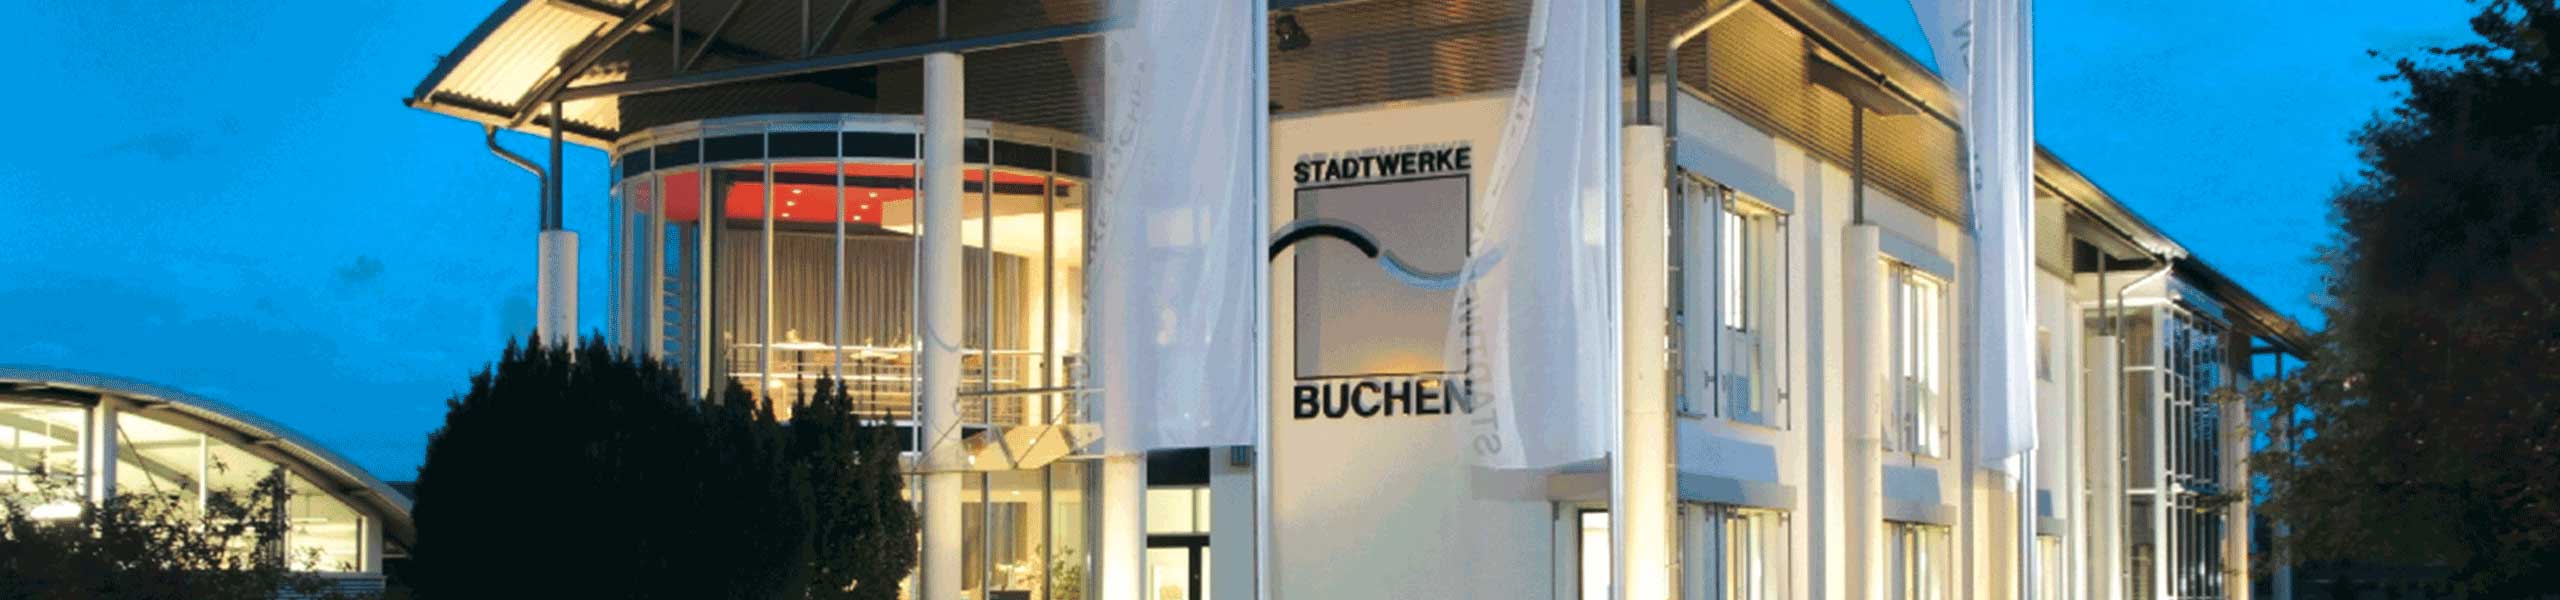 Stadtwerke Buchen GmbH & Co KG - Datenschutz